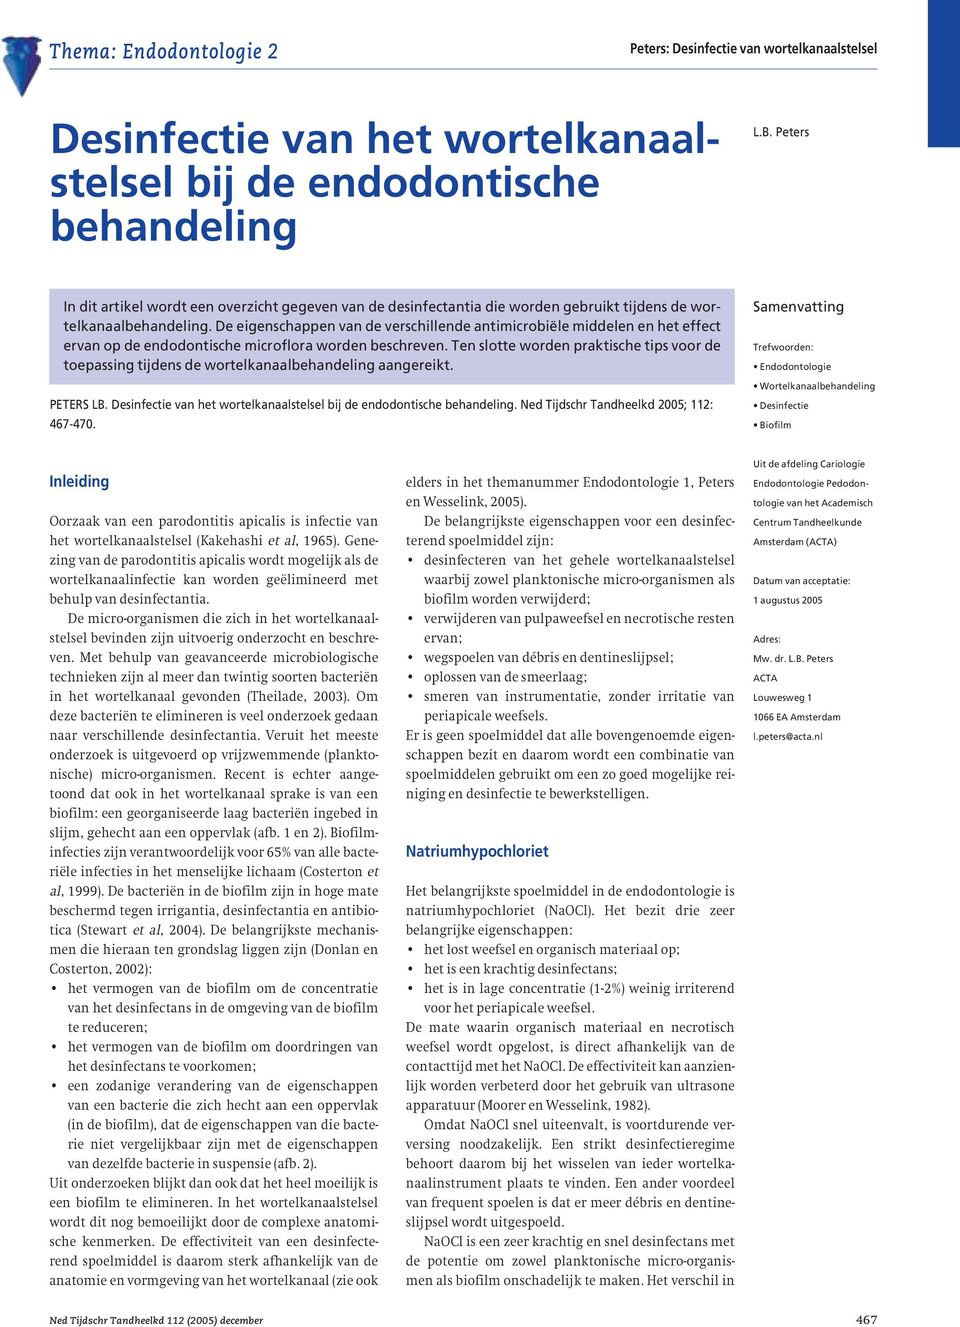 De eigenschappen van de verschillende antimicrobiële middelen en het effect ervan op de endodontische microflora worden beschreven.